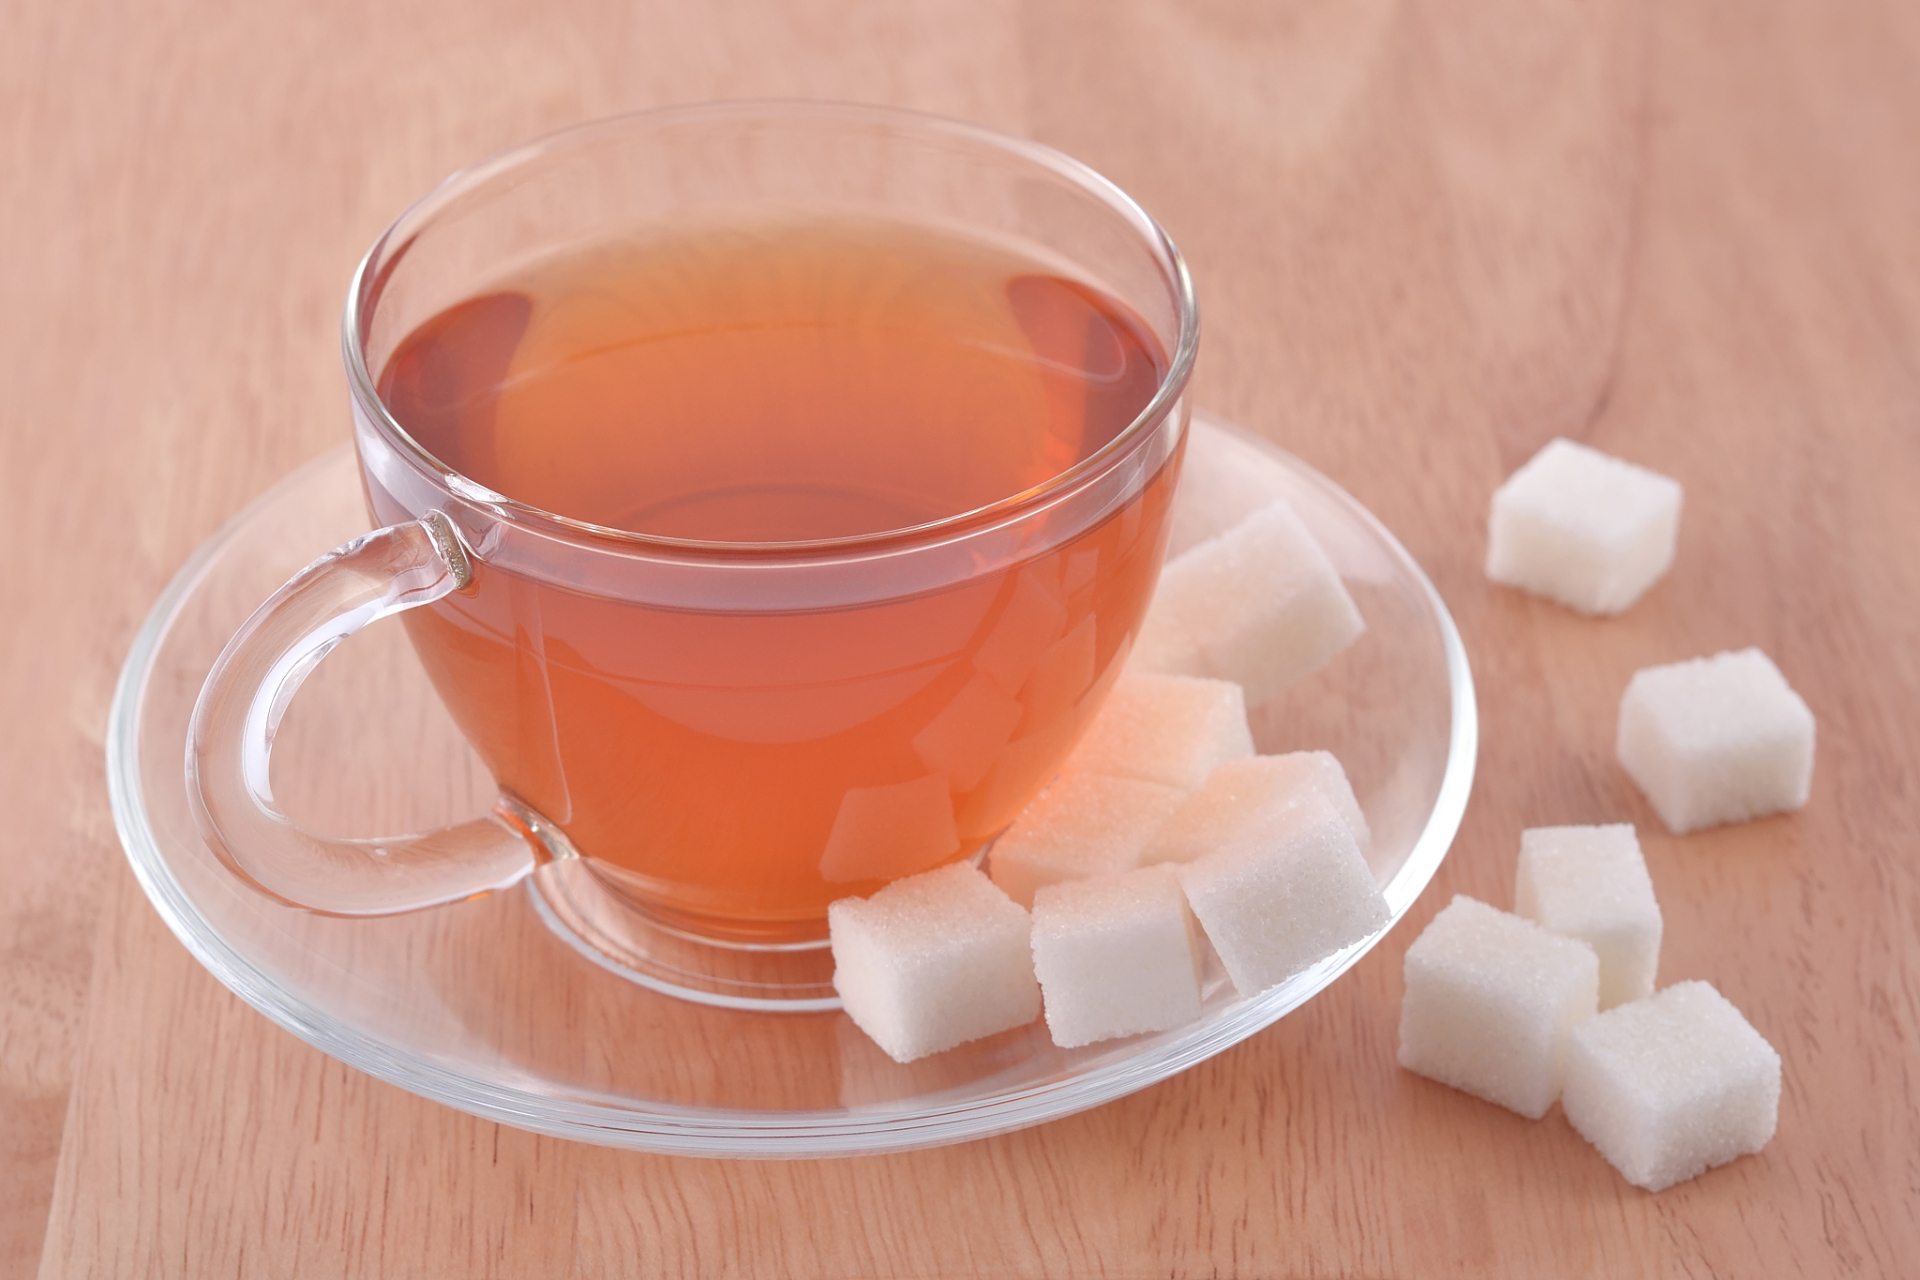 萝卜茶:此茶能清肺热,化痰湿,加少许食盐既可调味,又可清肺消炎